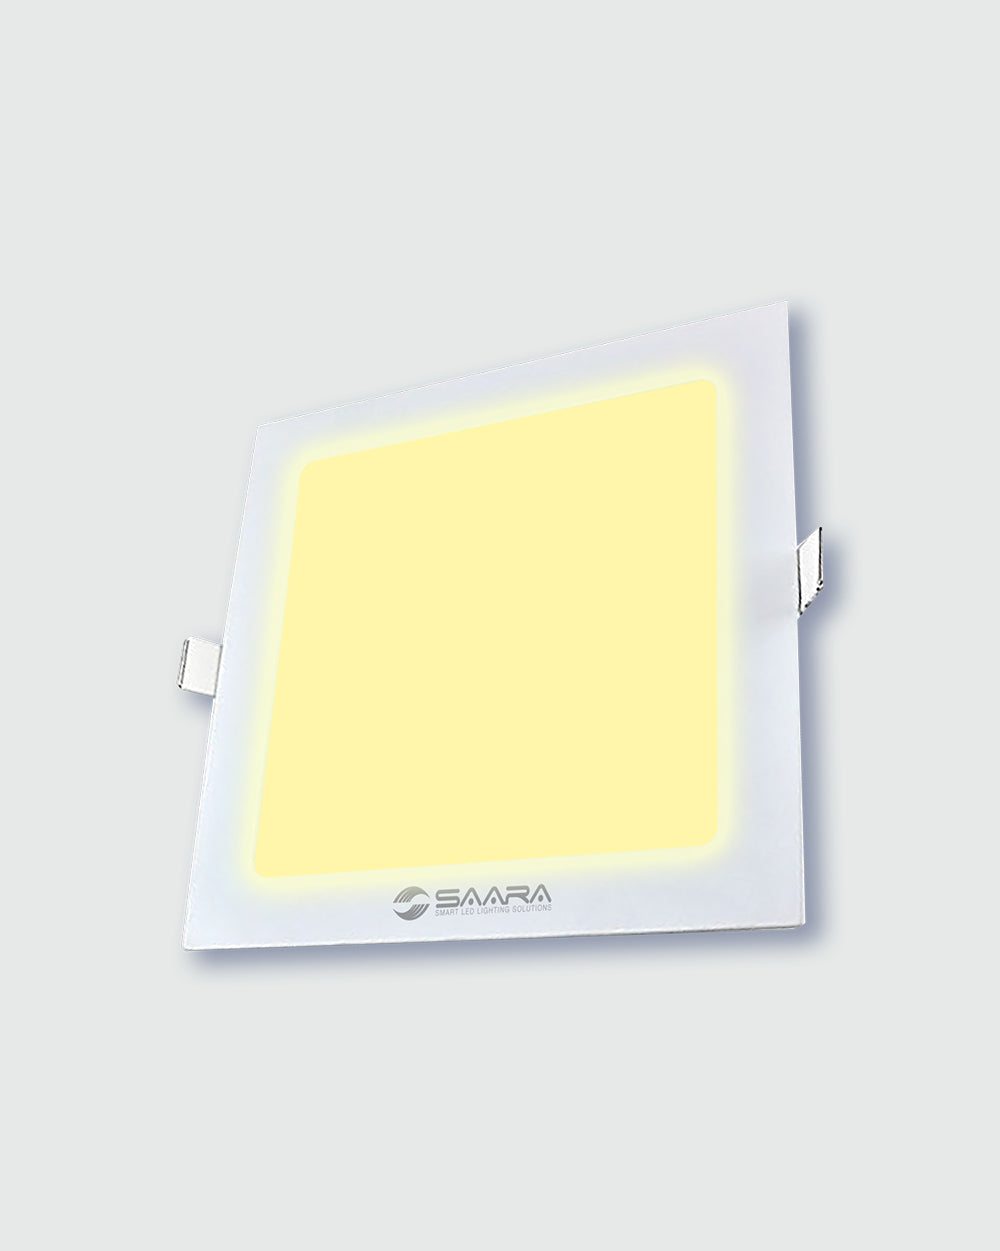 SAARA LED Panel Light Square